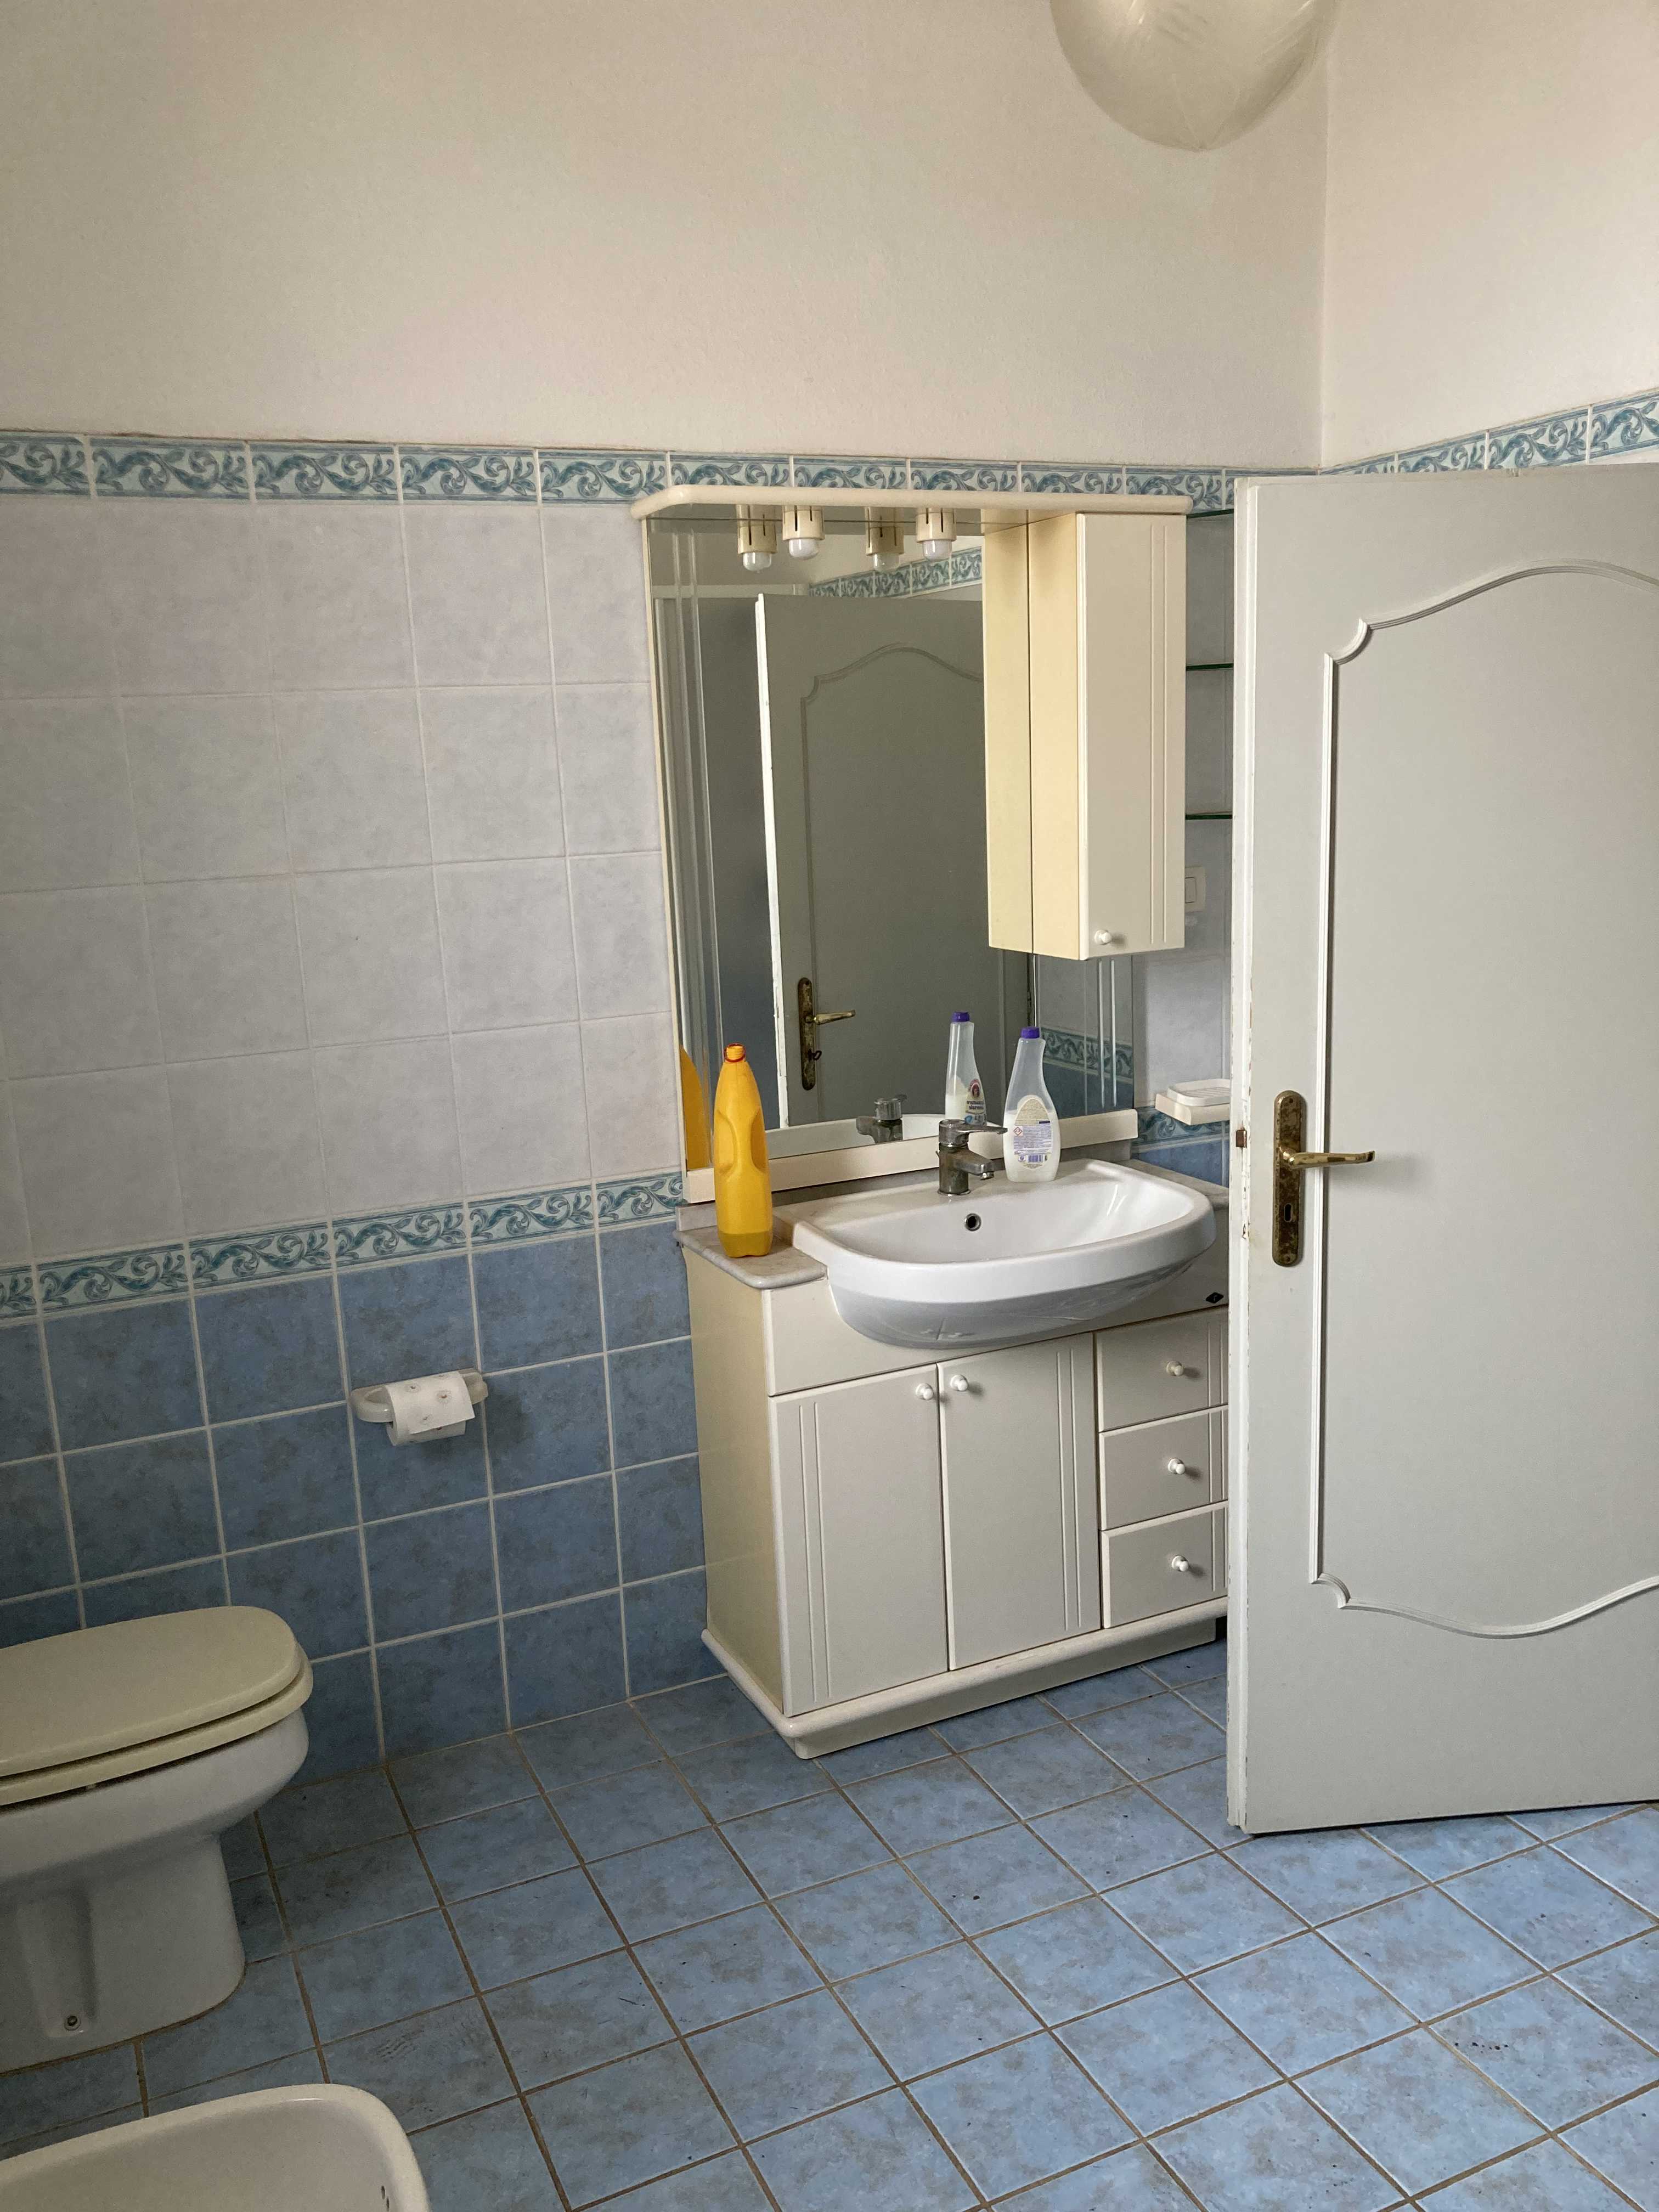 Vendite Salento: Vendita casa indipendente (Ruffano) - bagno